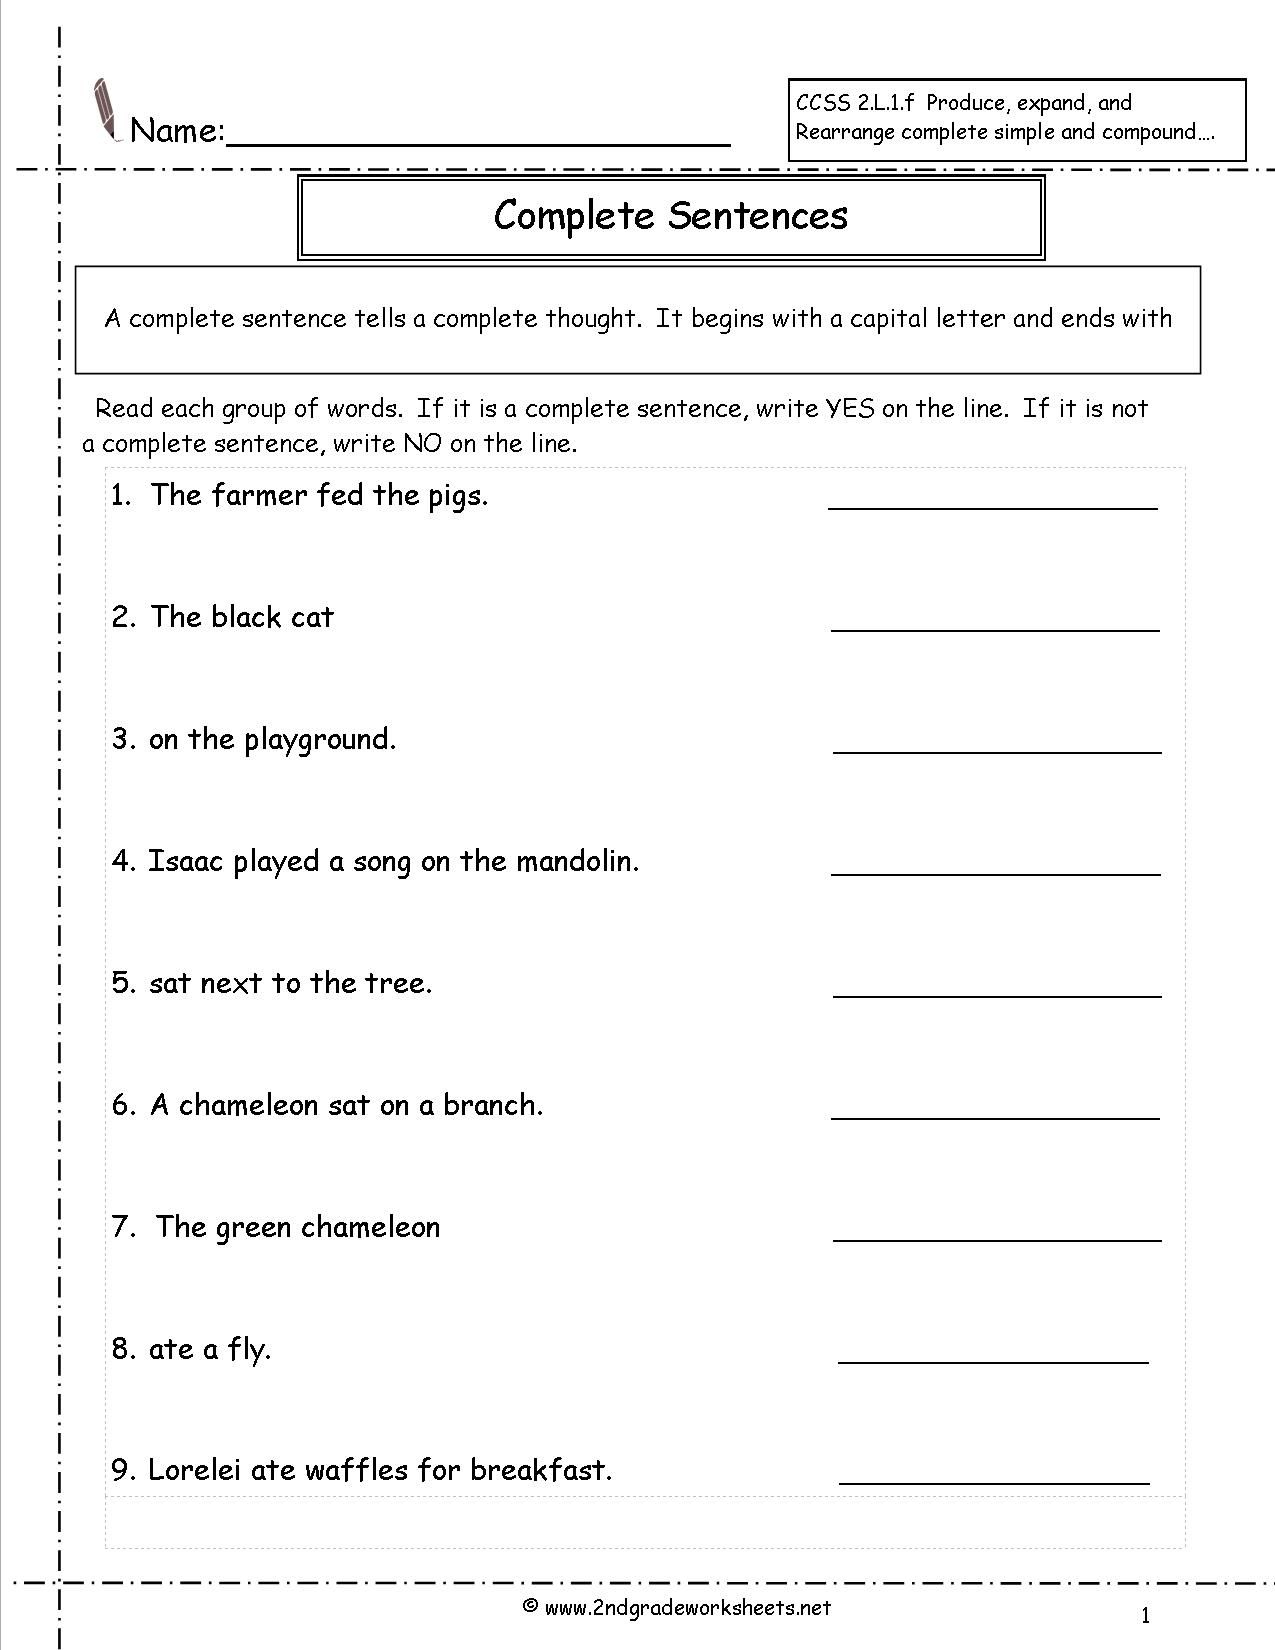 worksheet-complete-sentences-worksheets-complete-sentence-db-excel